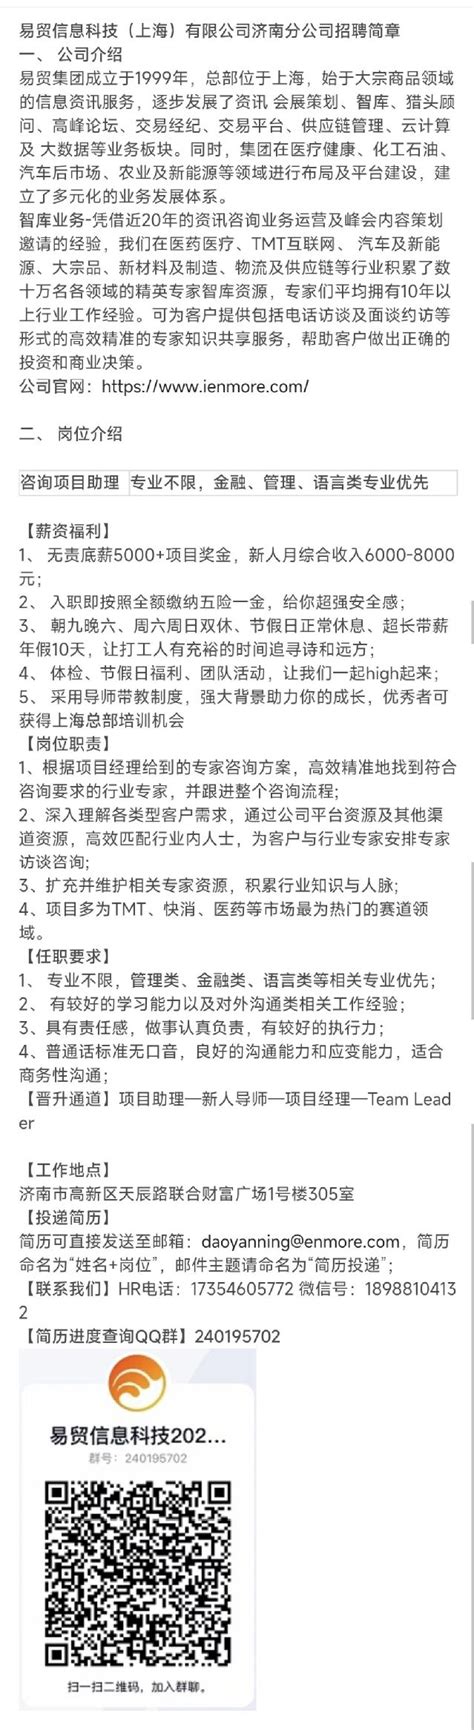 咨询项目助理招聘_易贸信息科技（上海）有限公司济南分公司_应届生求职网